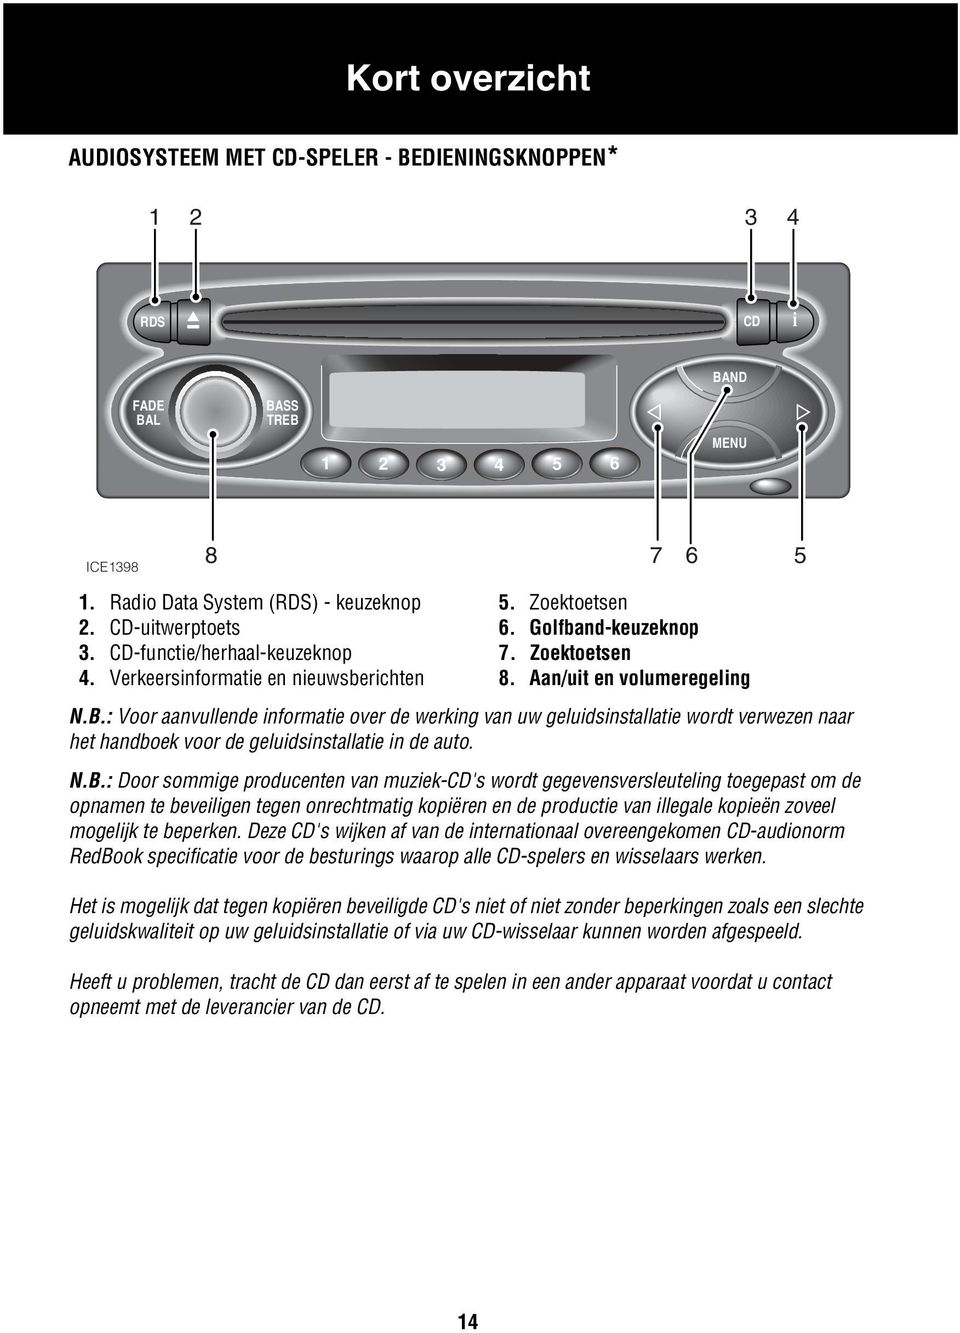 : Voor aanvullende informatie over de werking van uw geluidsinstallatie wordt verwezen naar het handboek voor de geluidsinstallatie in de auto. N.B.